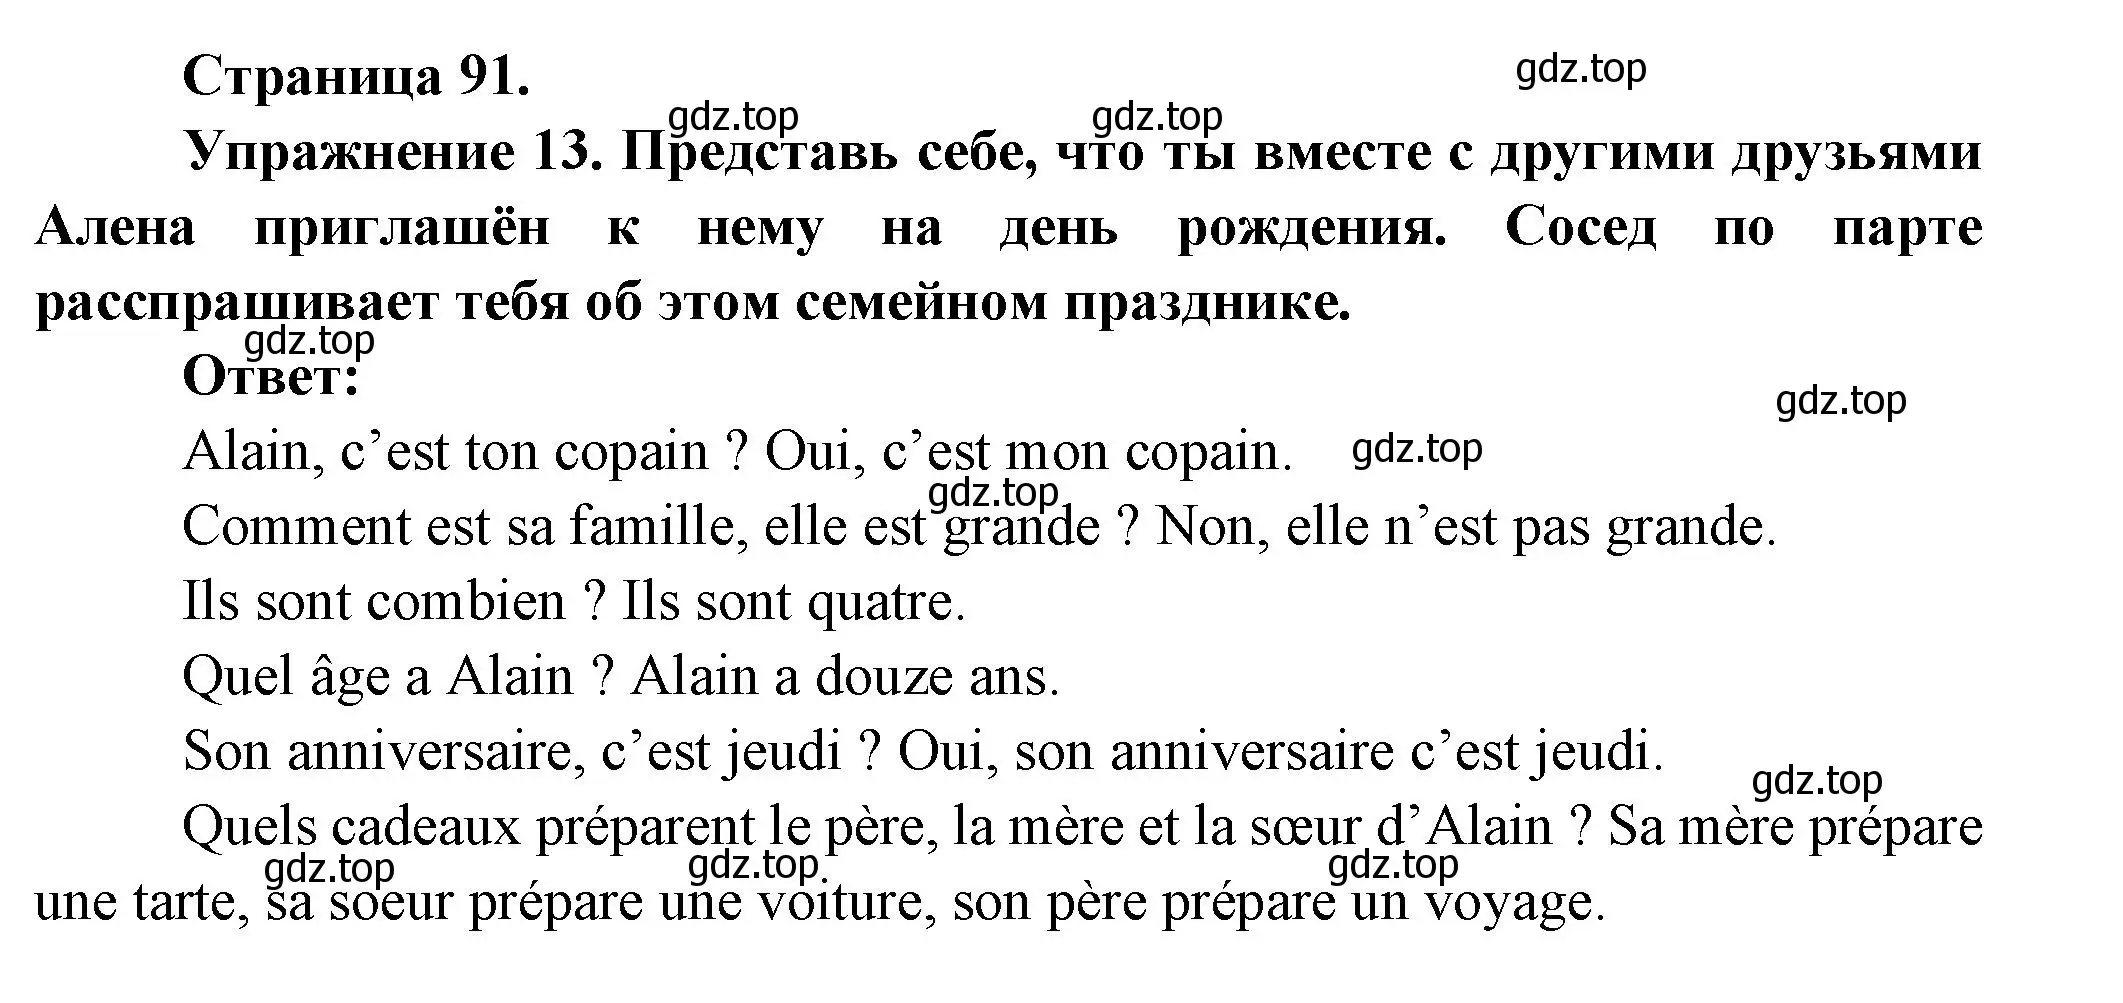 Решение номер 13 (страница 91) гдз по французскому языку 5 класс Береговская, Белосельская, учебник 1 часть